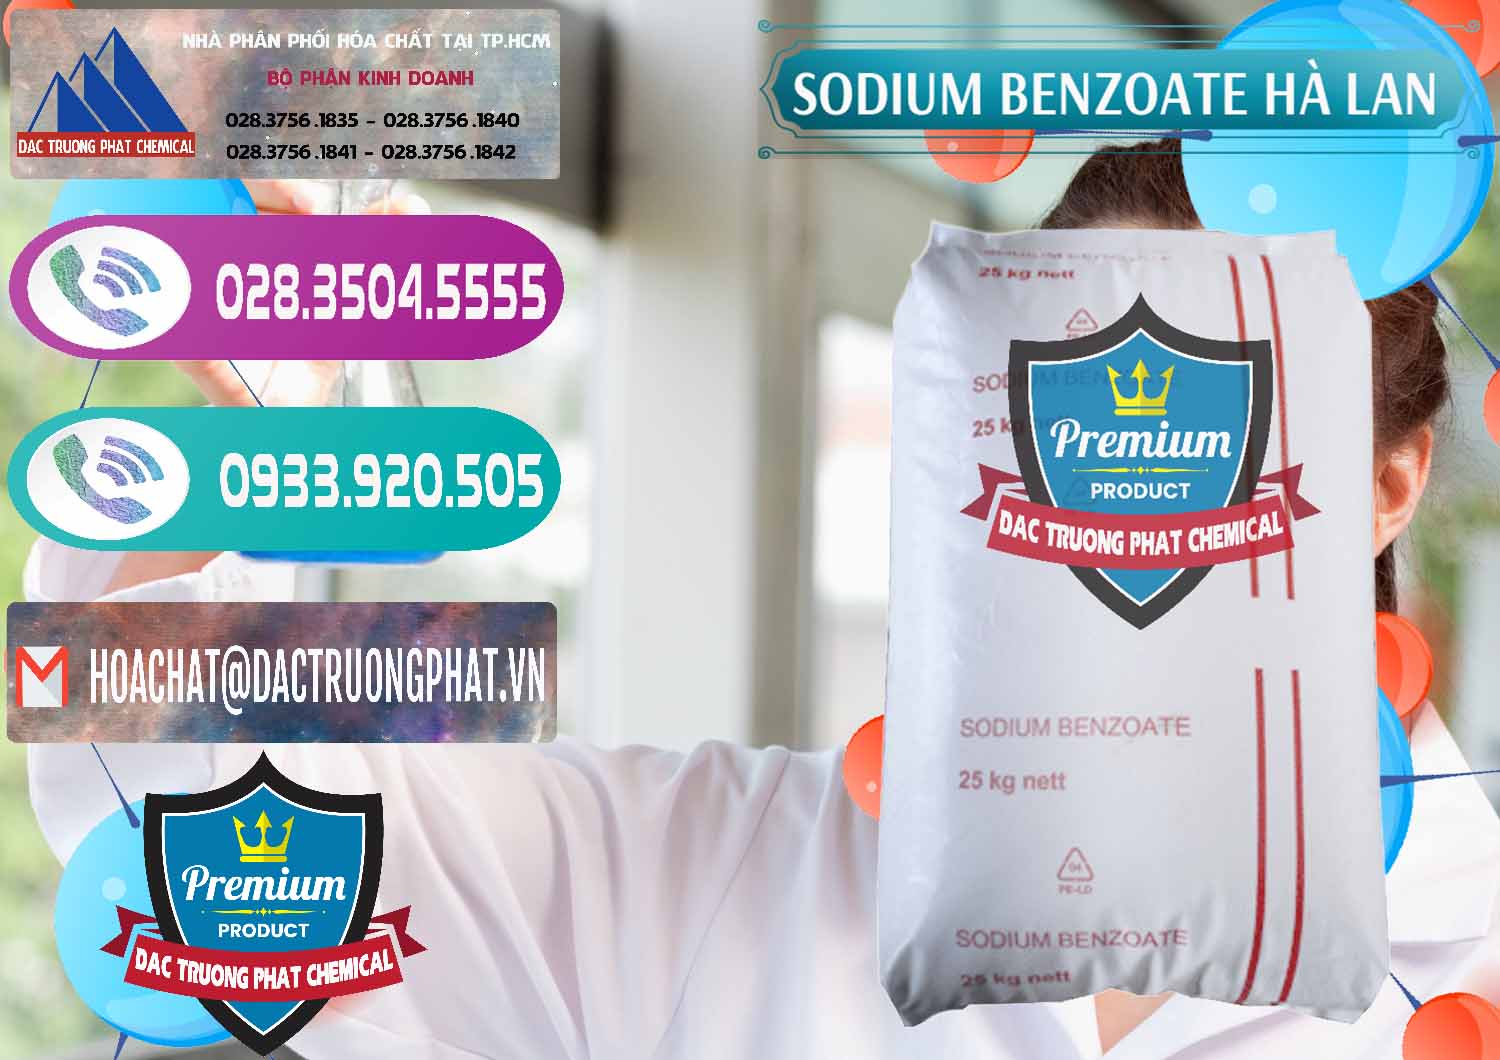 Công ty bán _ cung cấp Sodium Benzoate - Mốc Bột Chữ Cam Hà Lan Netherlands - 0360 - Nơi cung cấp & phân phối hóa chất tại TP.HCM - hoachatxulynuoc.com